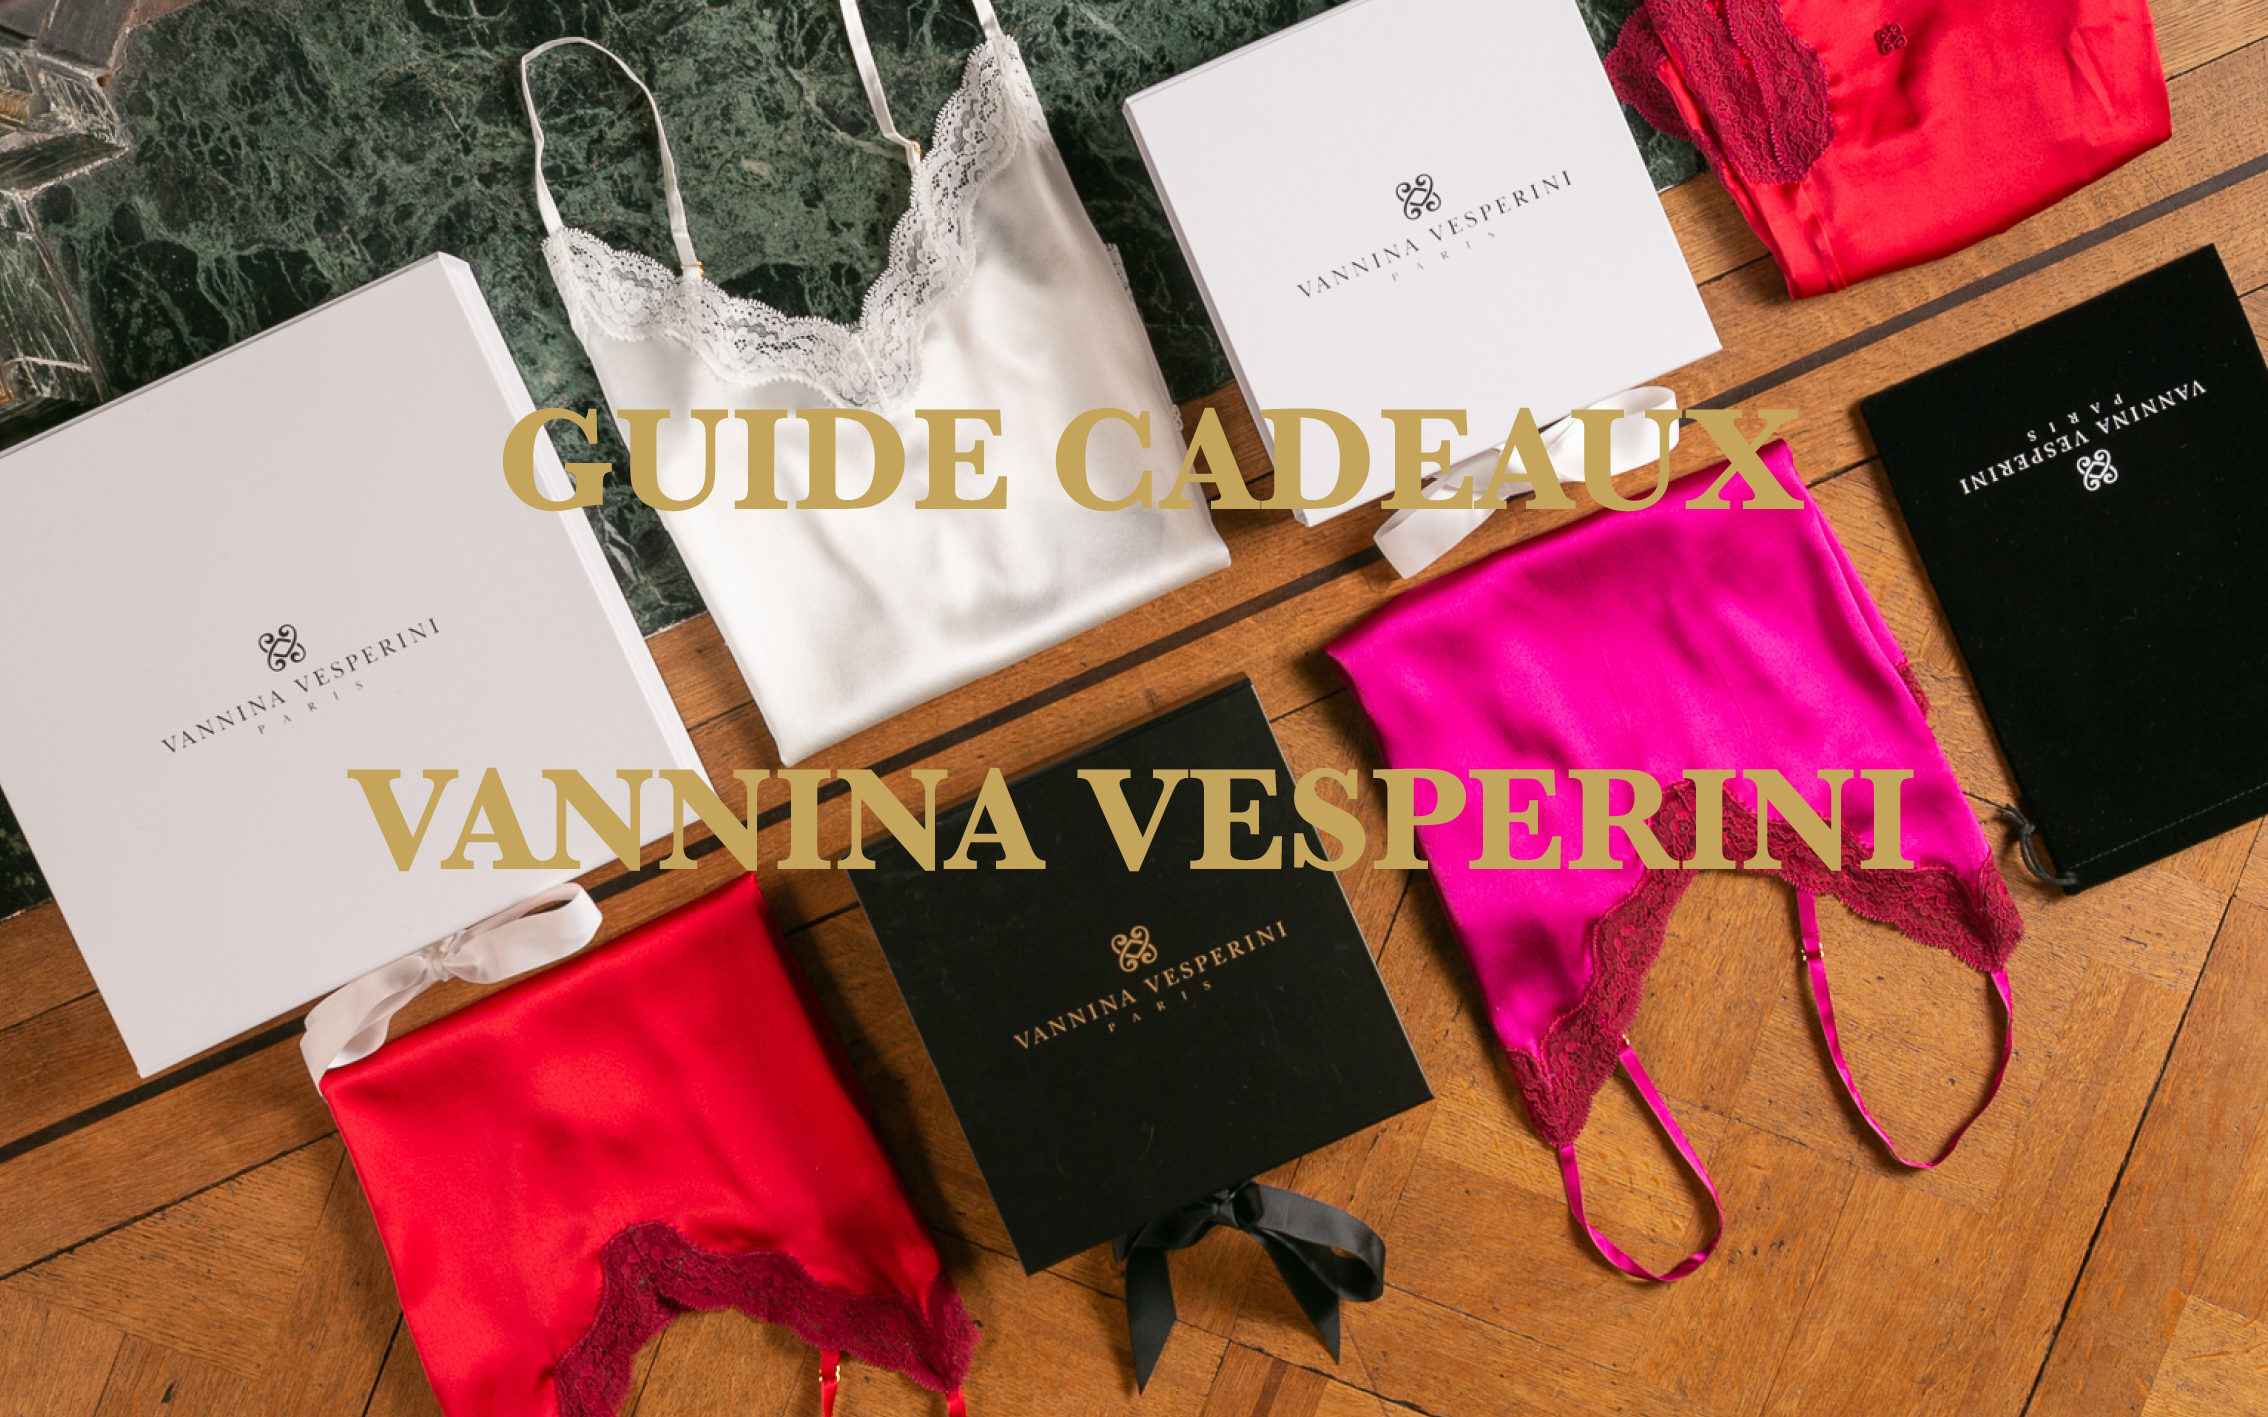 Guide Cadeaux vannina vesperini